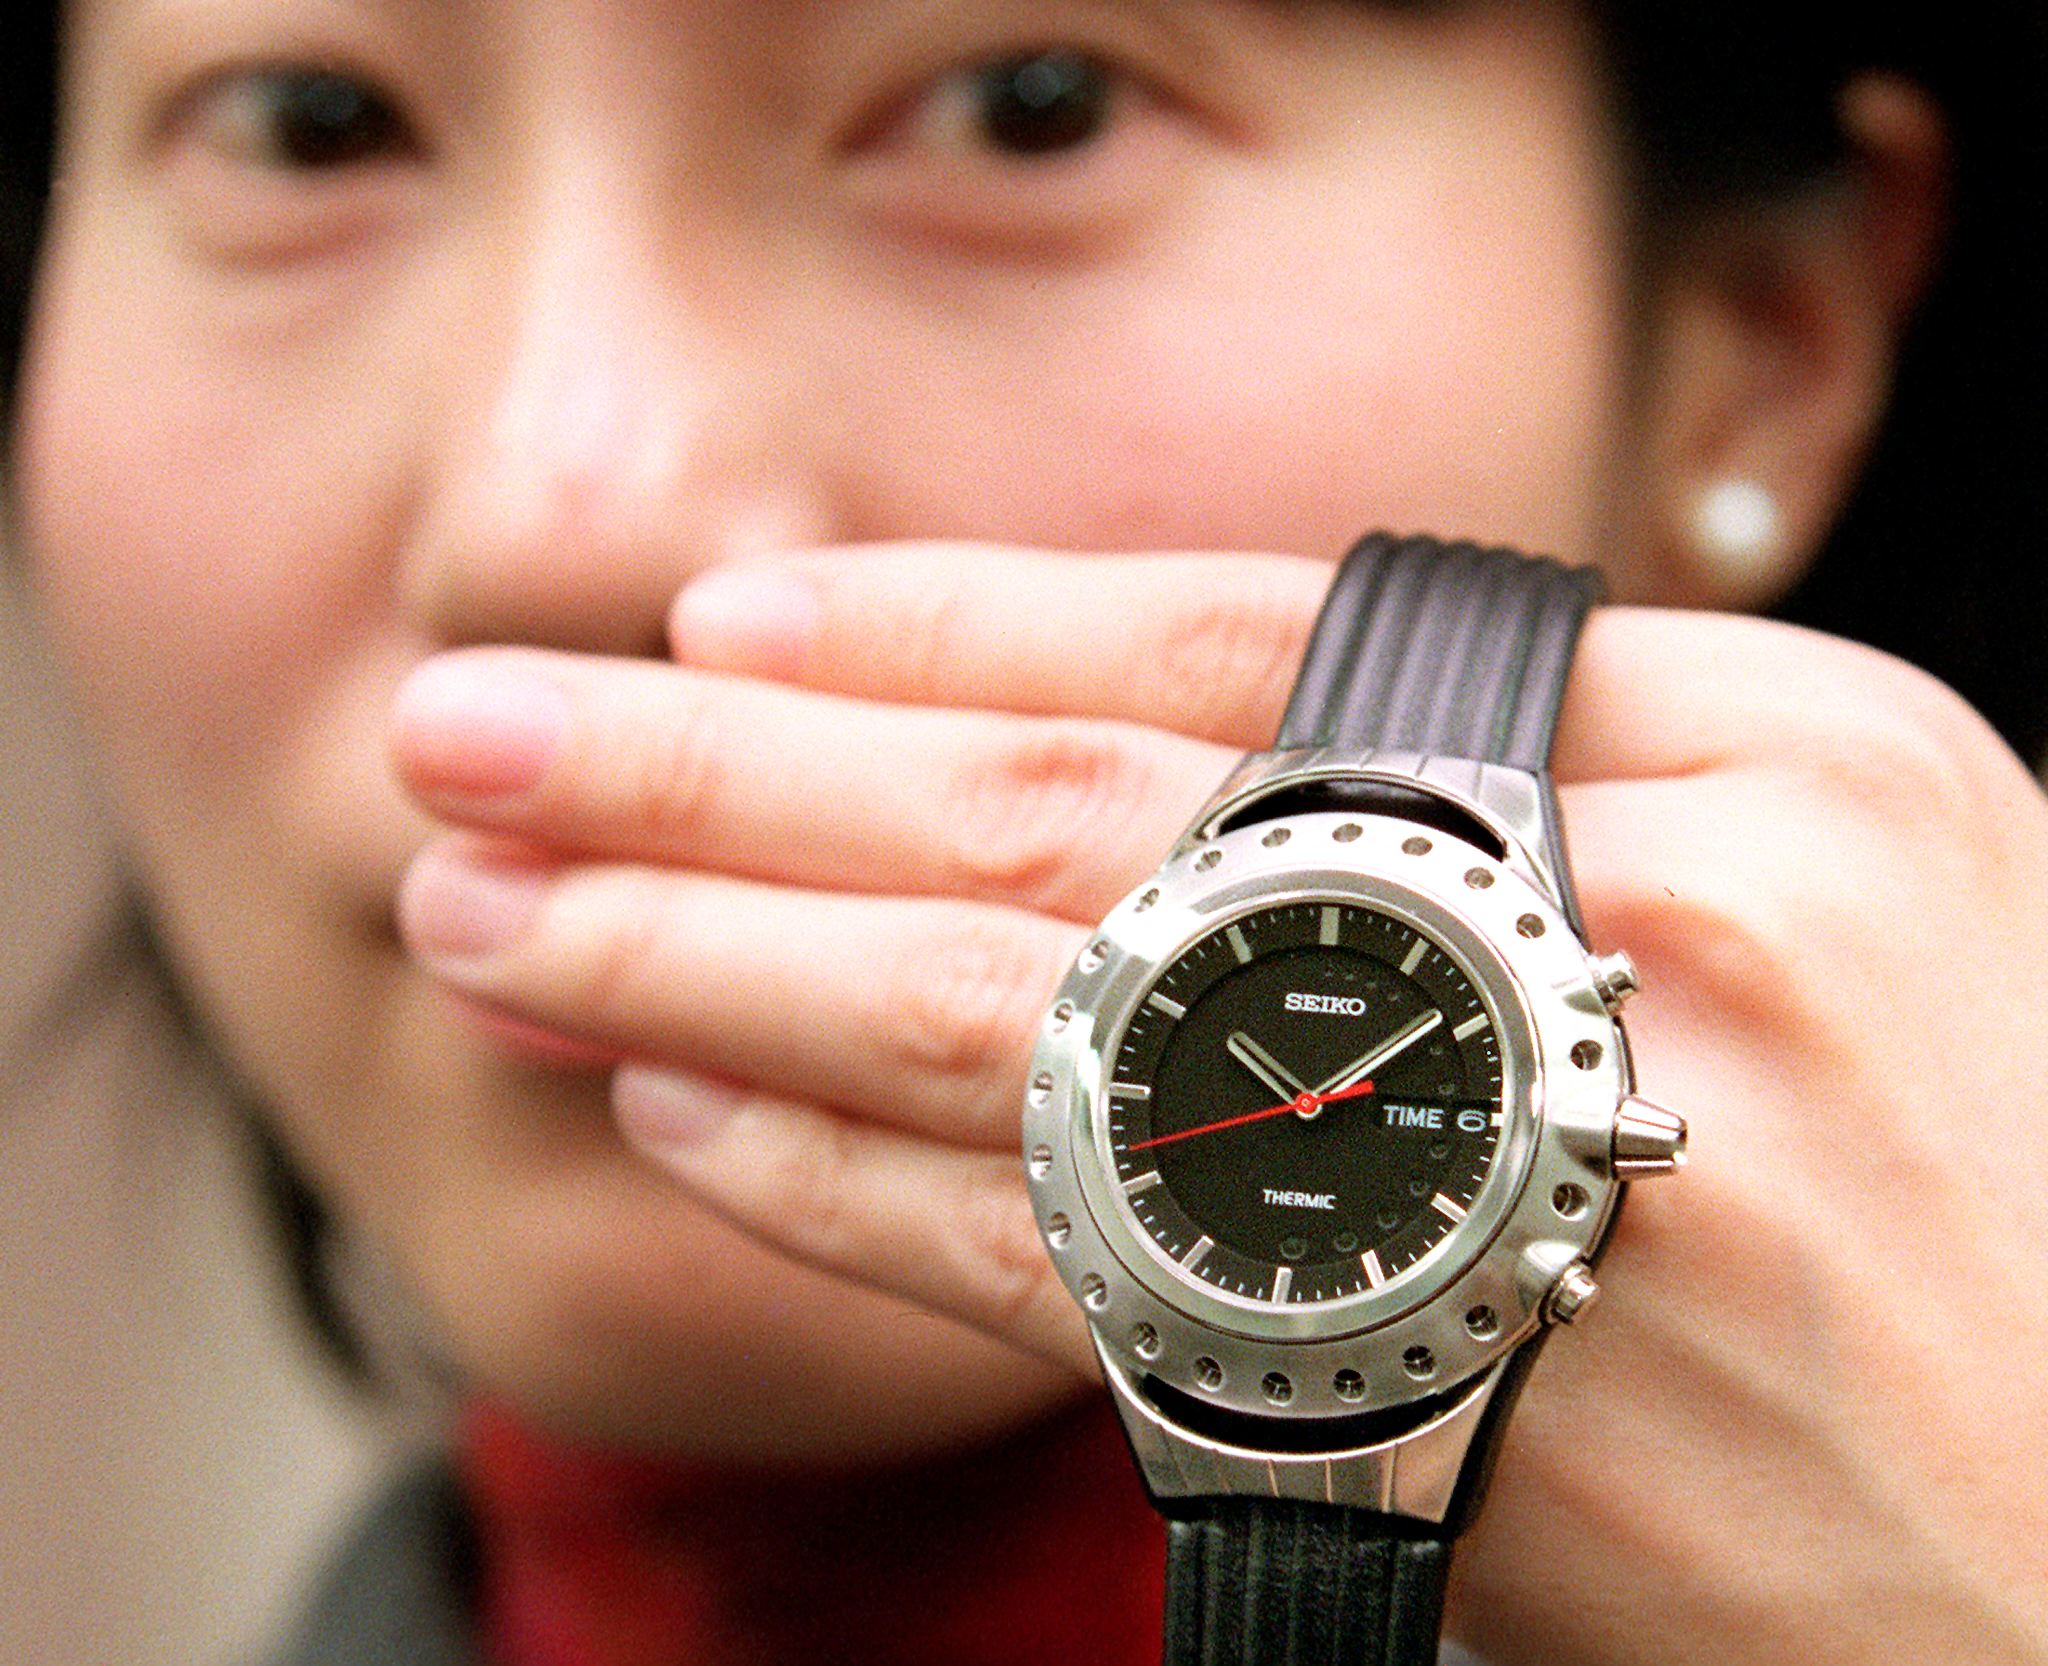 日本精工推出的世界上第一款由人体热量驱动的电手表 。